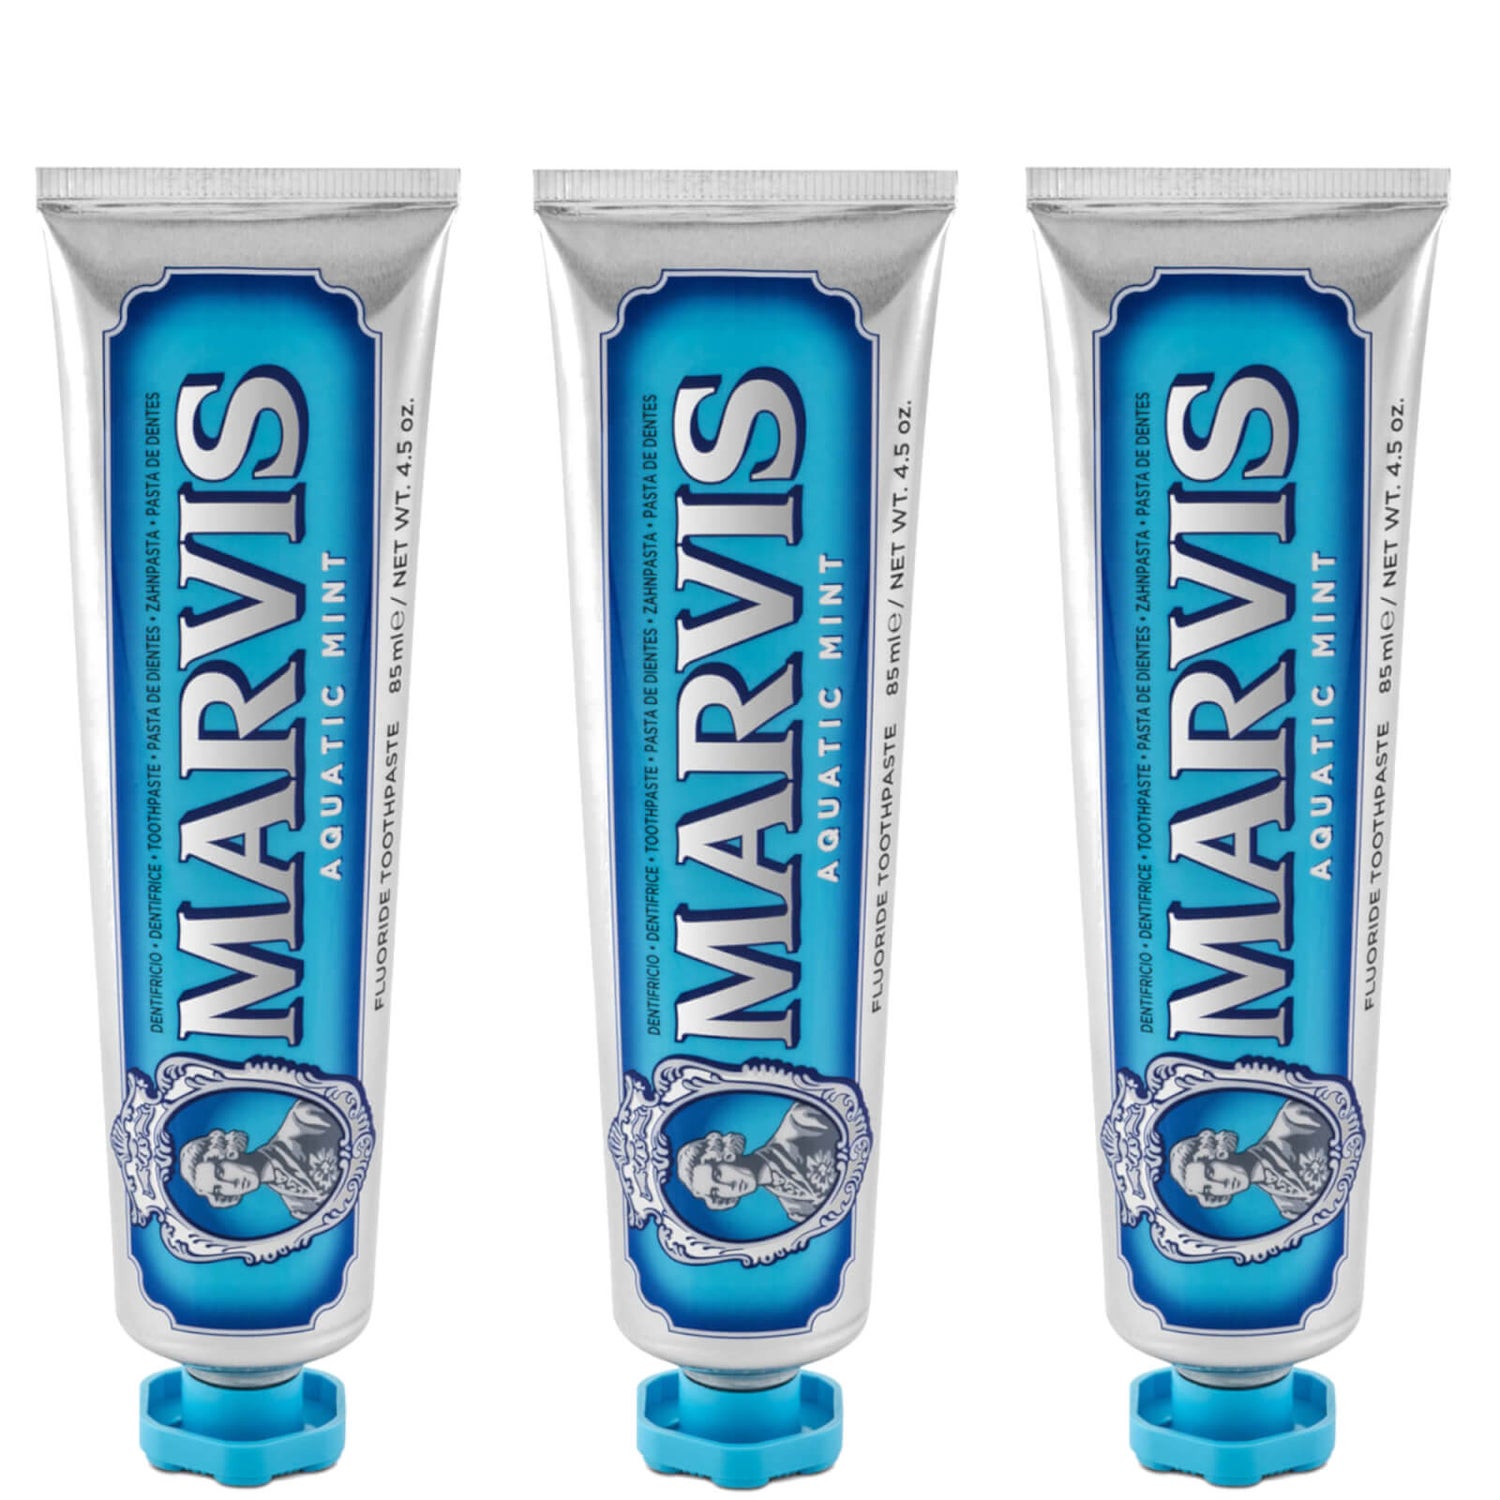 Pack de pasta de dientes Menta acuática de Marvis (3 x 85 ml)